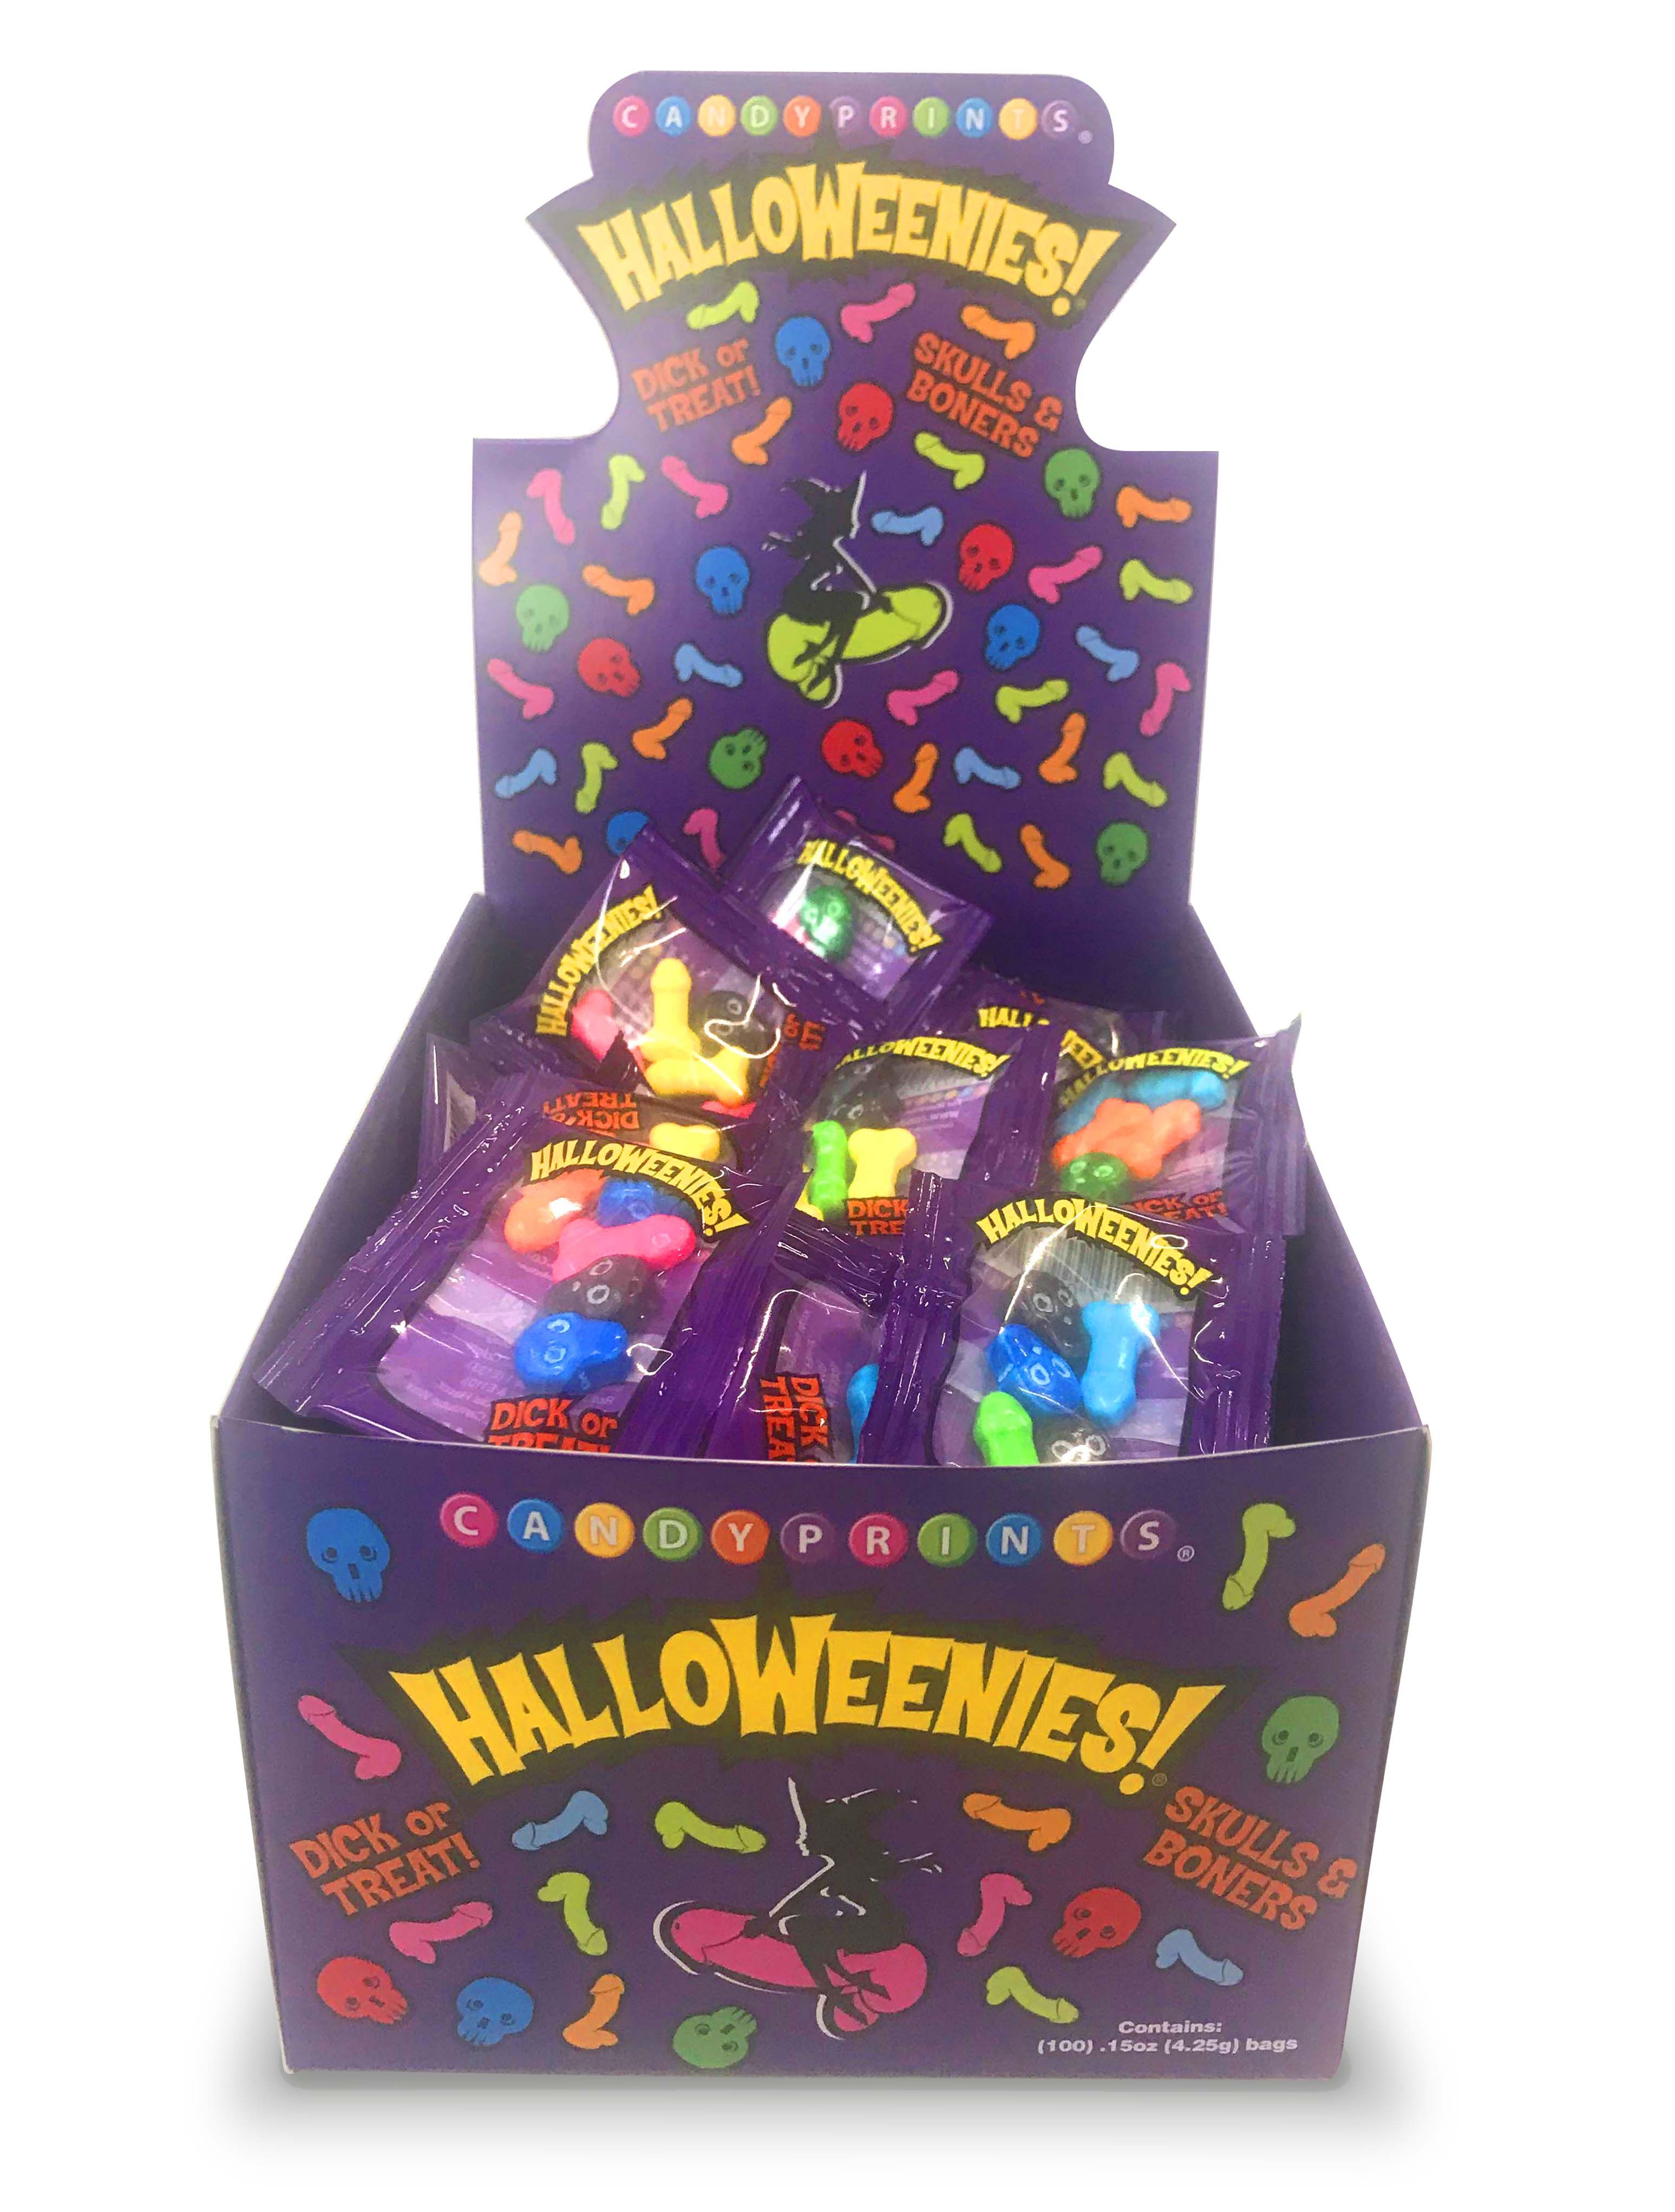 Halloweenies - Display of 100 Bags